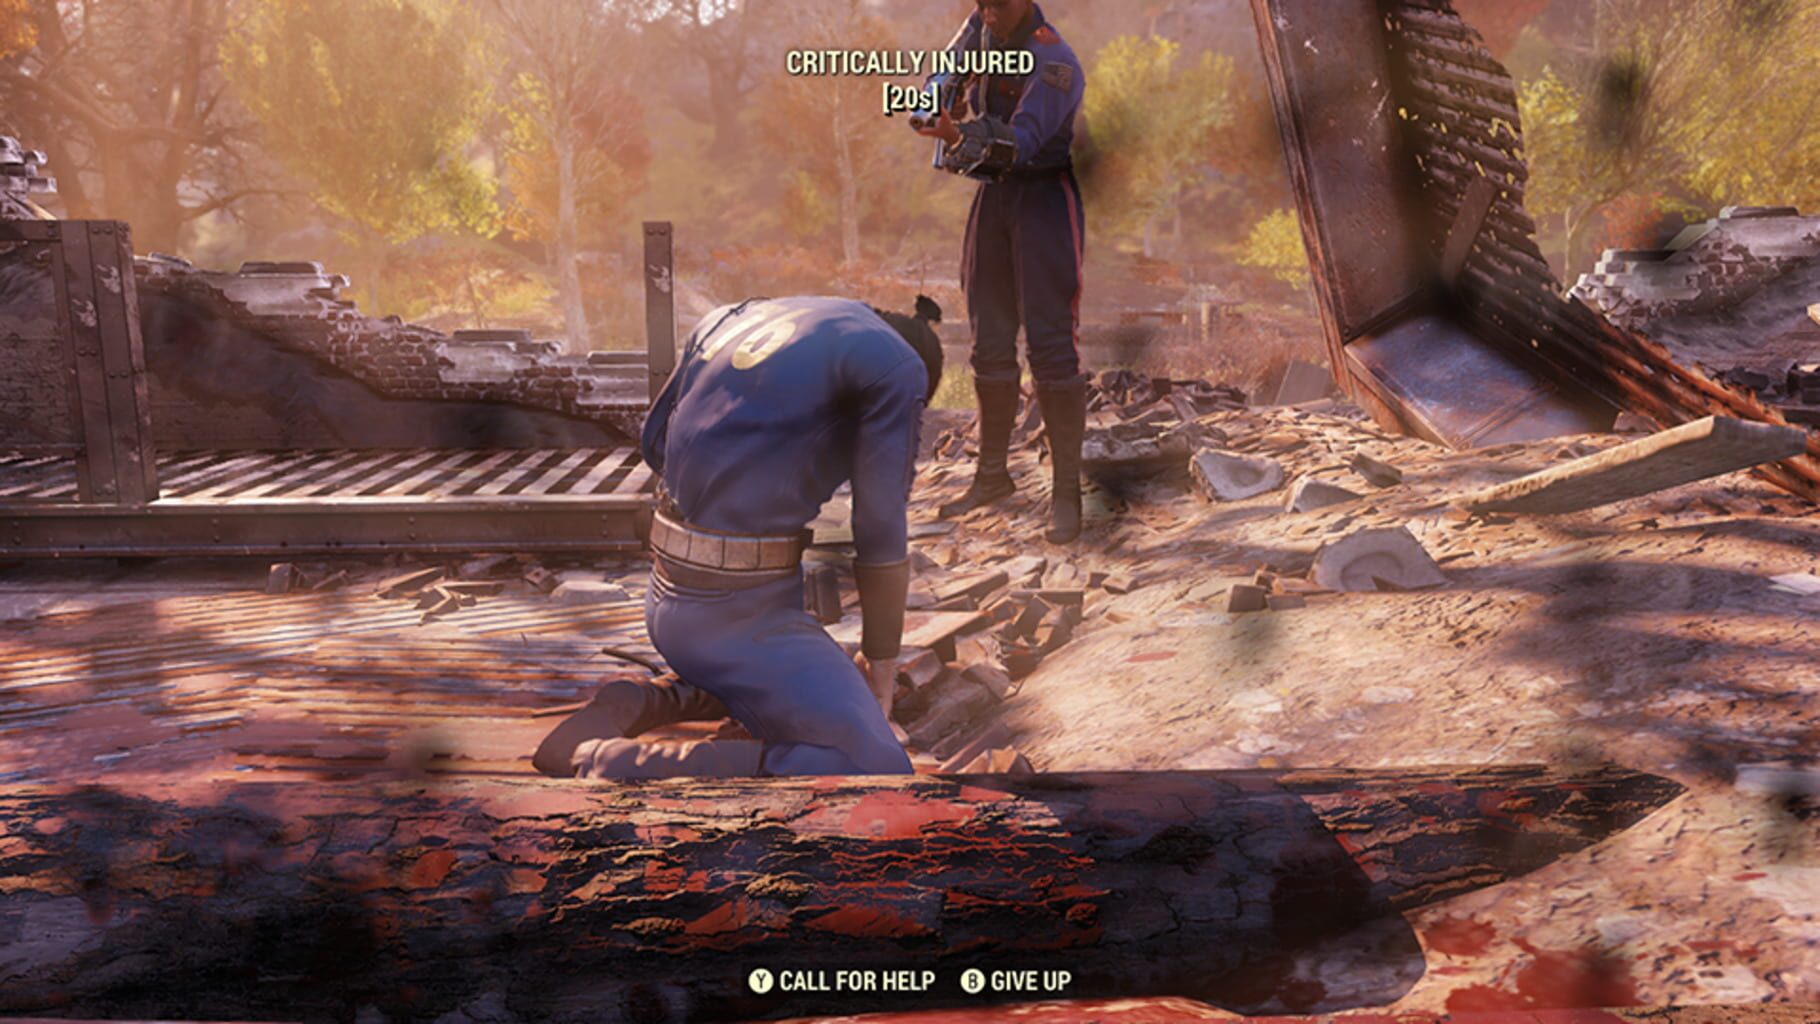 Fallout 76 screenshots